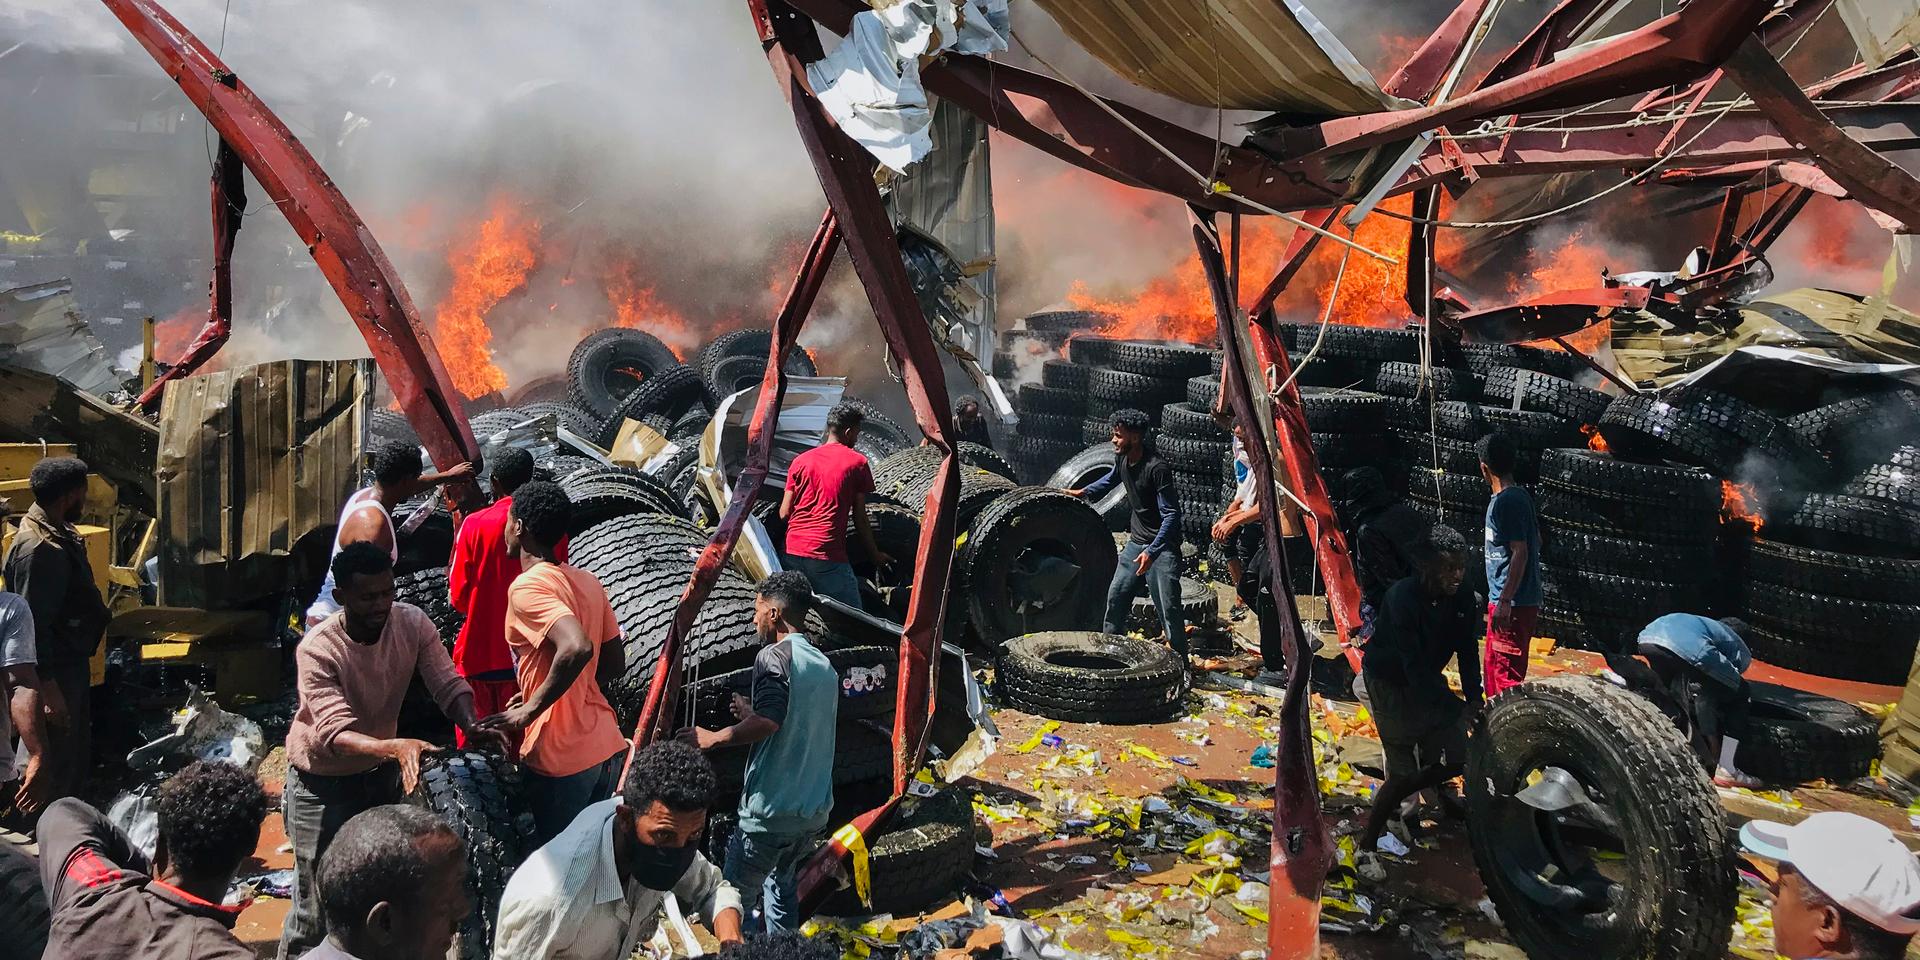 Människor söker spår av överlevande och offer efter en flygattack mot Mekele, huvudstad i Tigray-regionen i norra Etiopien den 20 oktober. Kriget förs delvis i medial skugga med små möjligheter för journalister och hjälparbetare att rapportera.